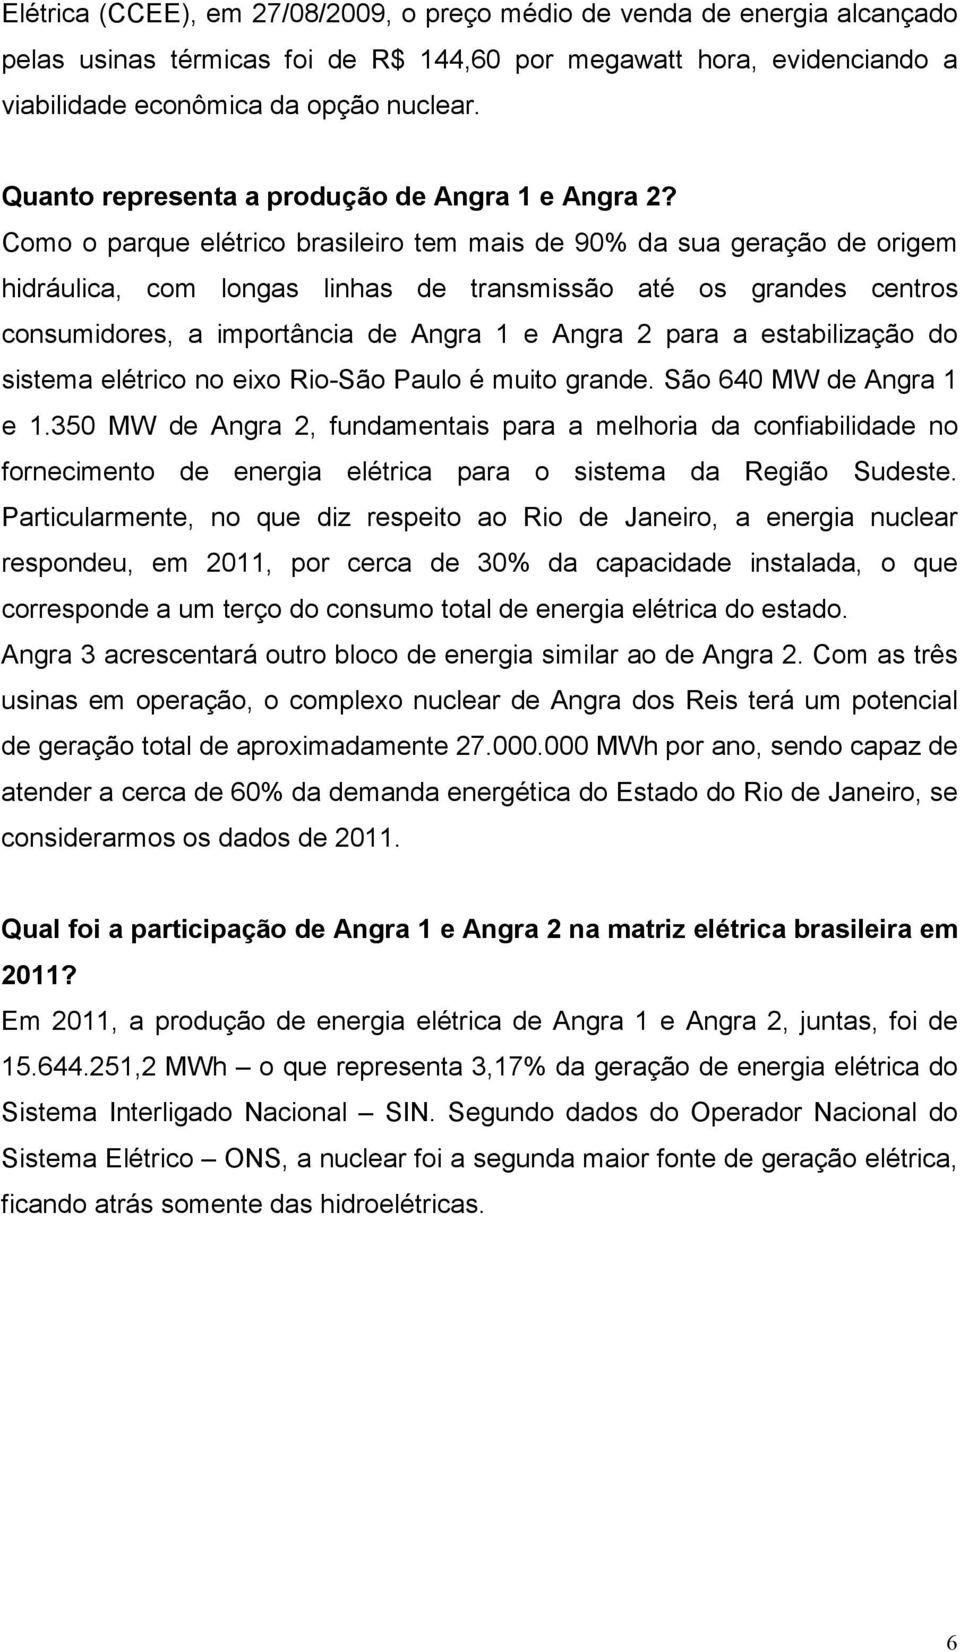 Como o parque elétrico brasileiro tem mais de 90% da sua geração de origem hidráulica, com longas linhas de transmissão até os grandes centros consumidores, a importância de Angra 1 e Angra 2 para a